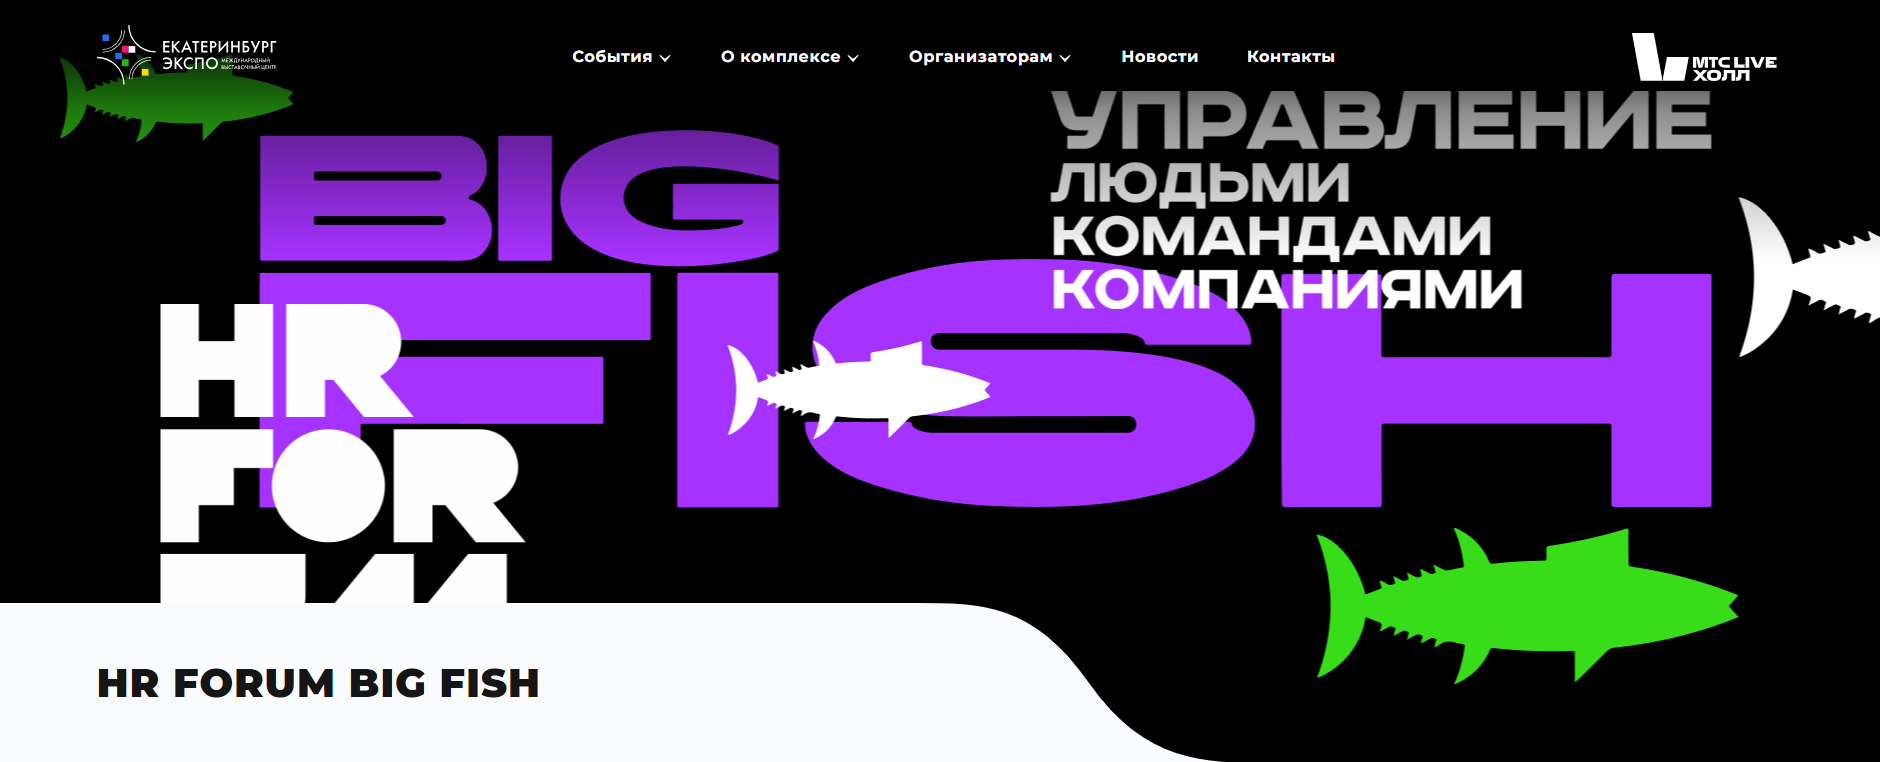 Предпринимателей Башкортостана приглашают на Всероссийский HR FORUM BIG FISH